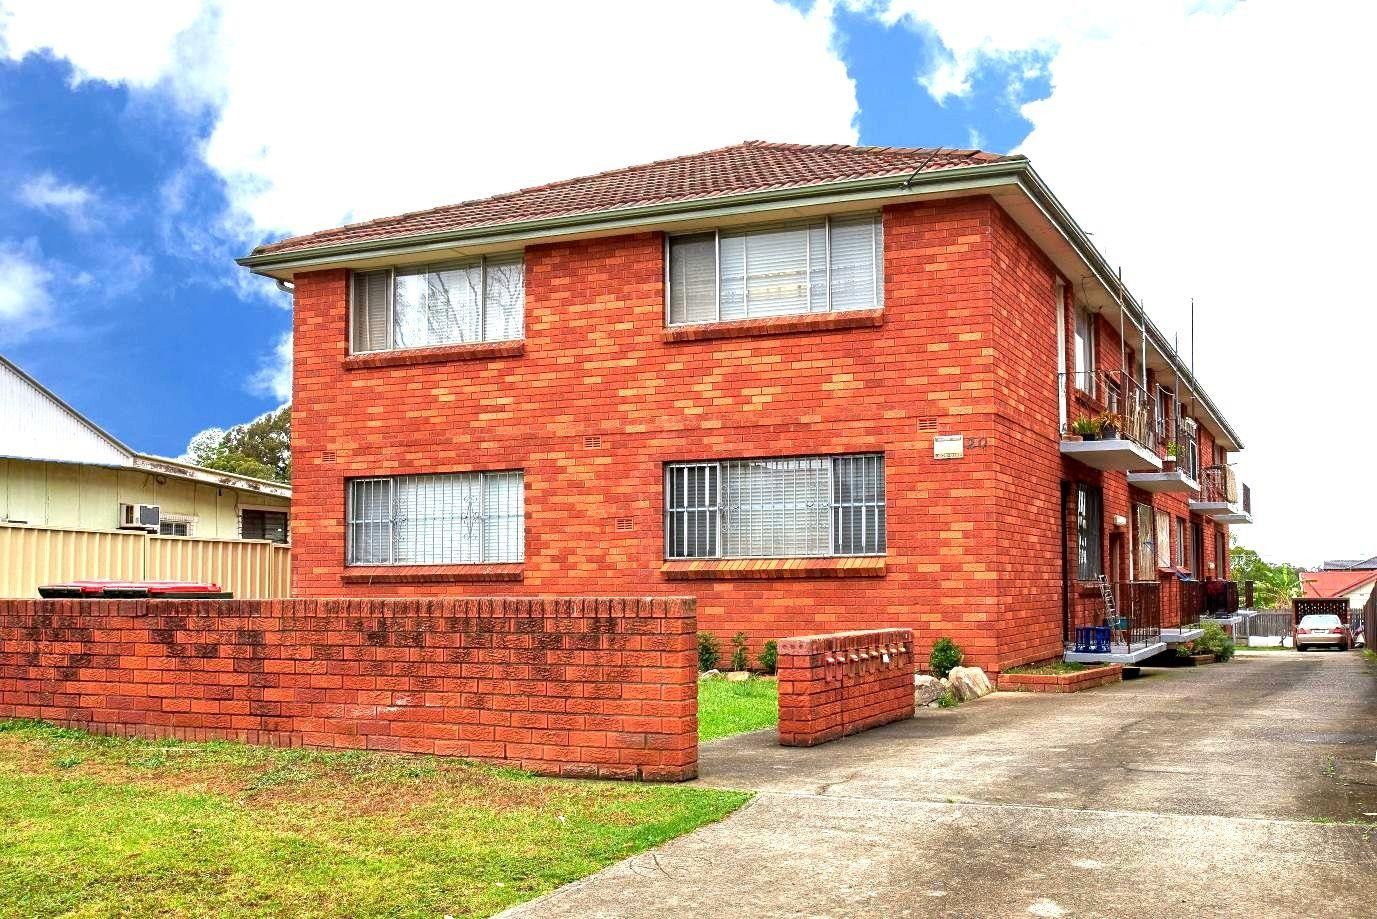 2 bedrooms Apartment / Unit / Flat in 8/20 Bridge Street CABRAMATTA NSW, 2166